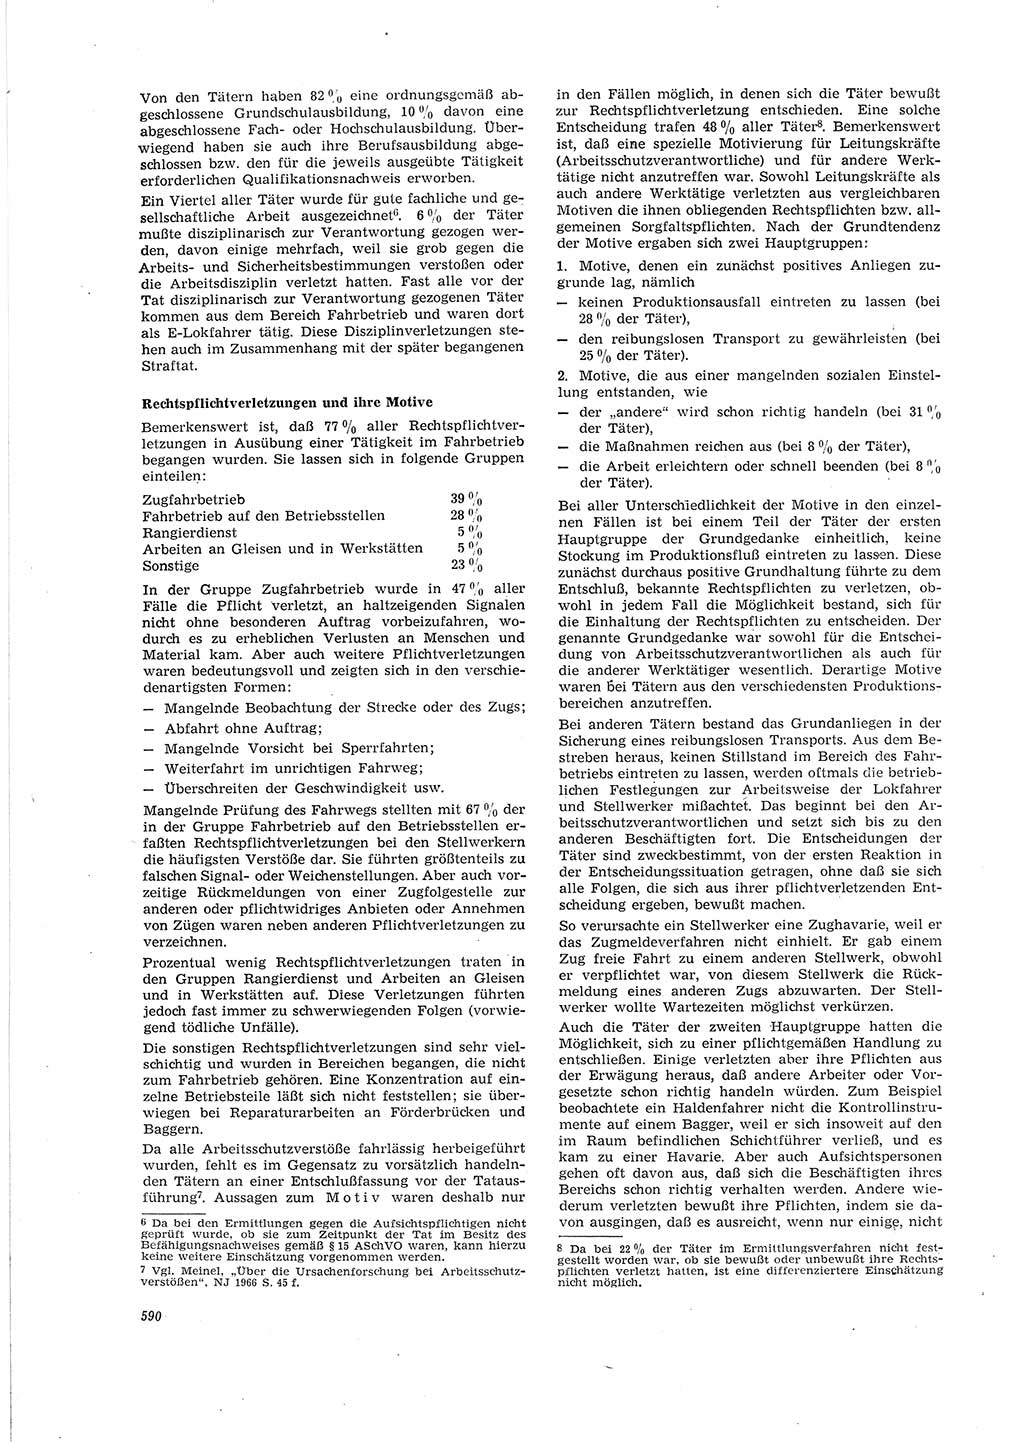 Neue Justiz (NJ), Zeitschrift für Recht und Rechtswissenschaft [Deutsche Demokratische Republik (DDR)], 20. Jahrgang 1966, Seite 590 (NJ DDR 1966, S. 590)